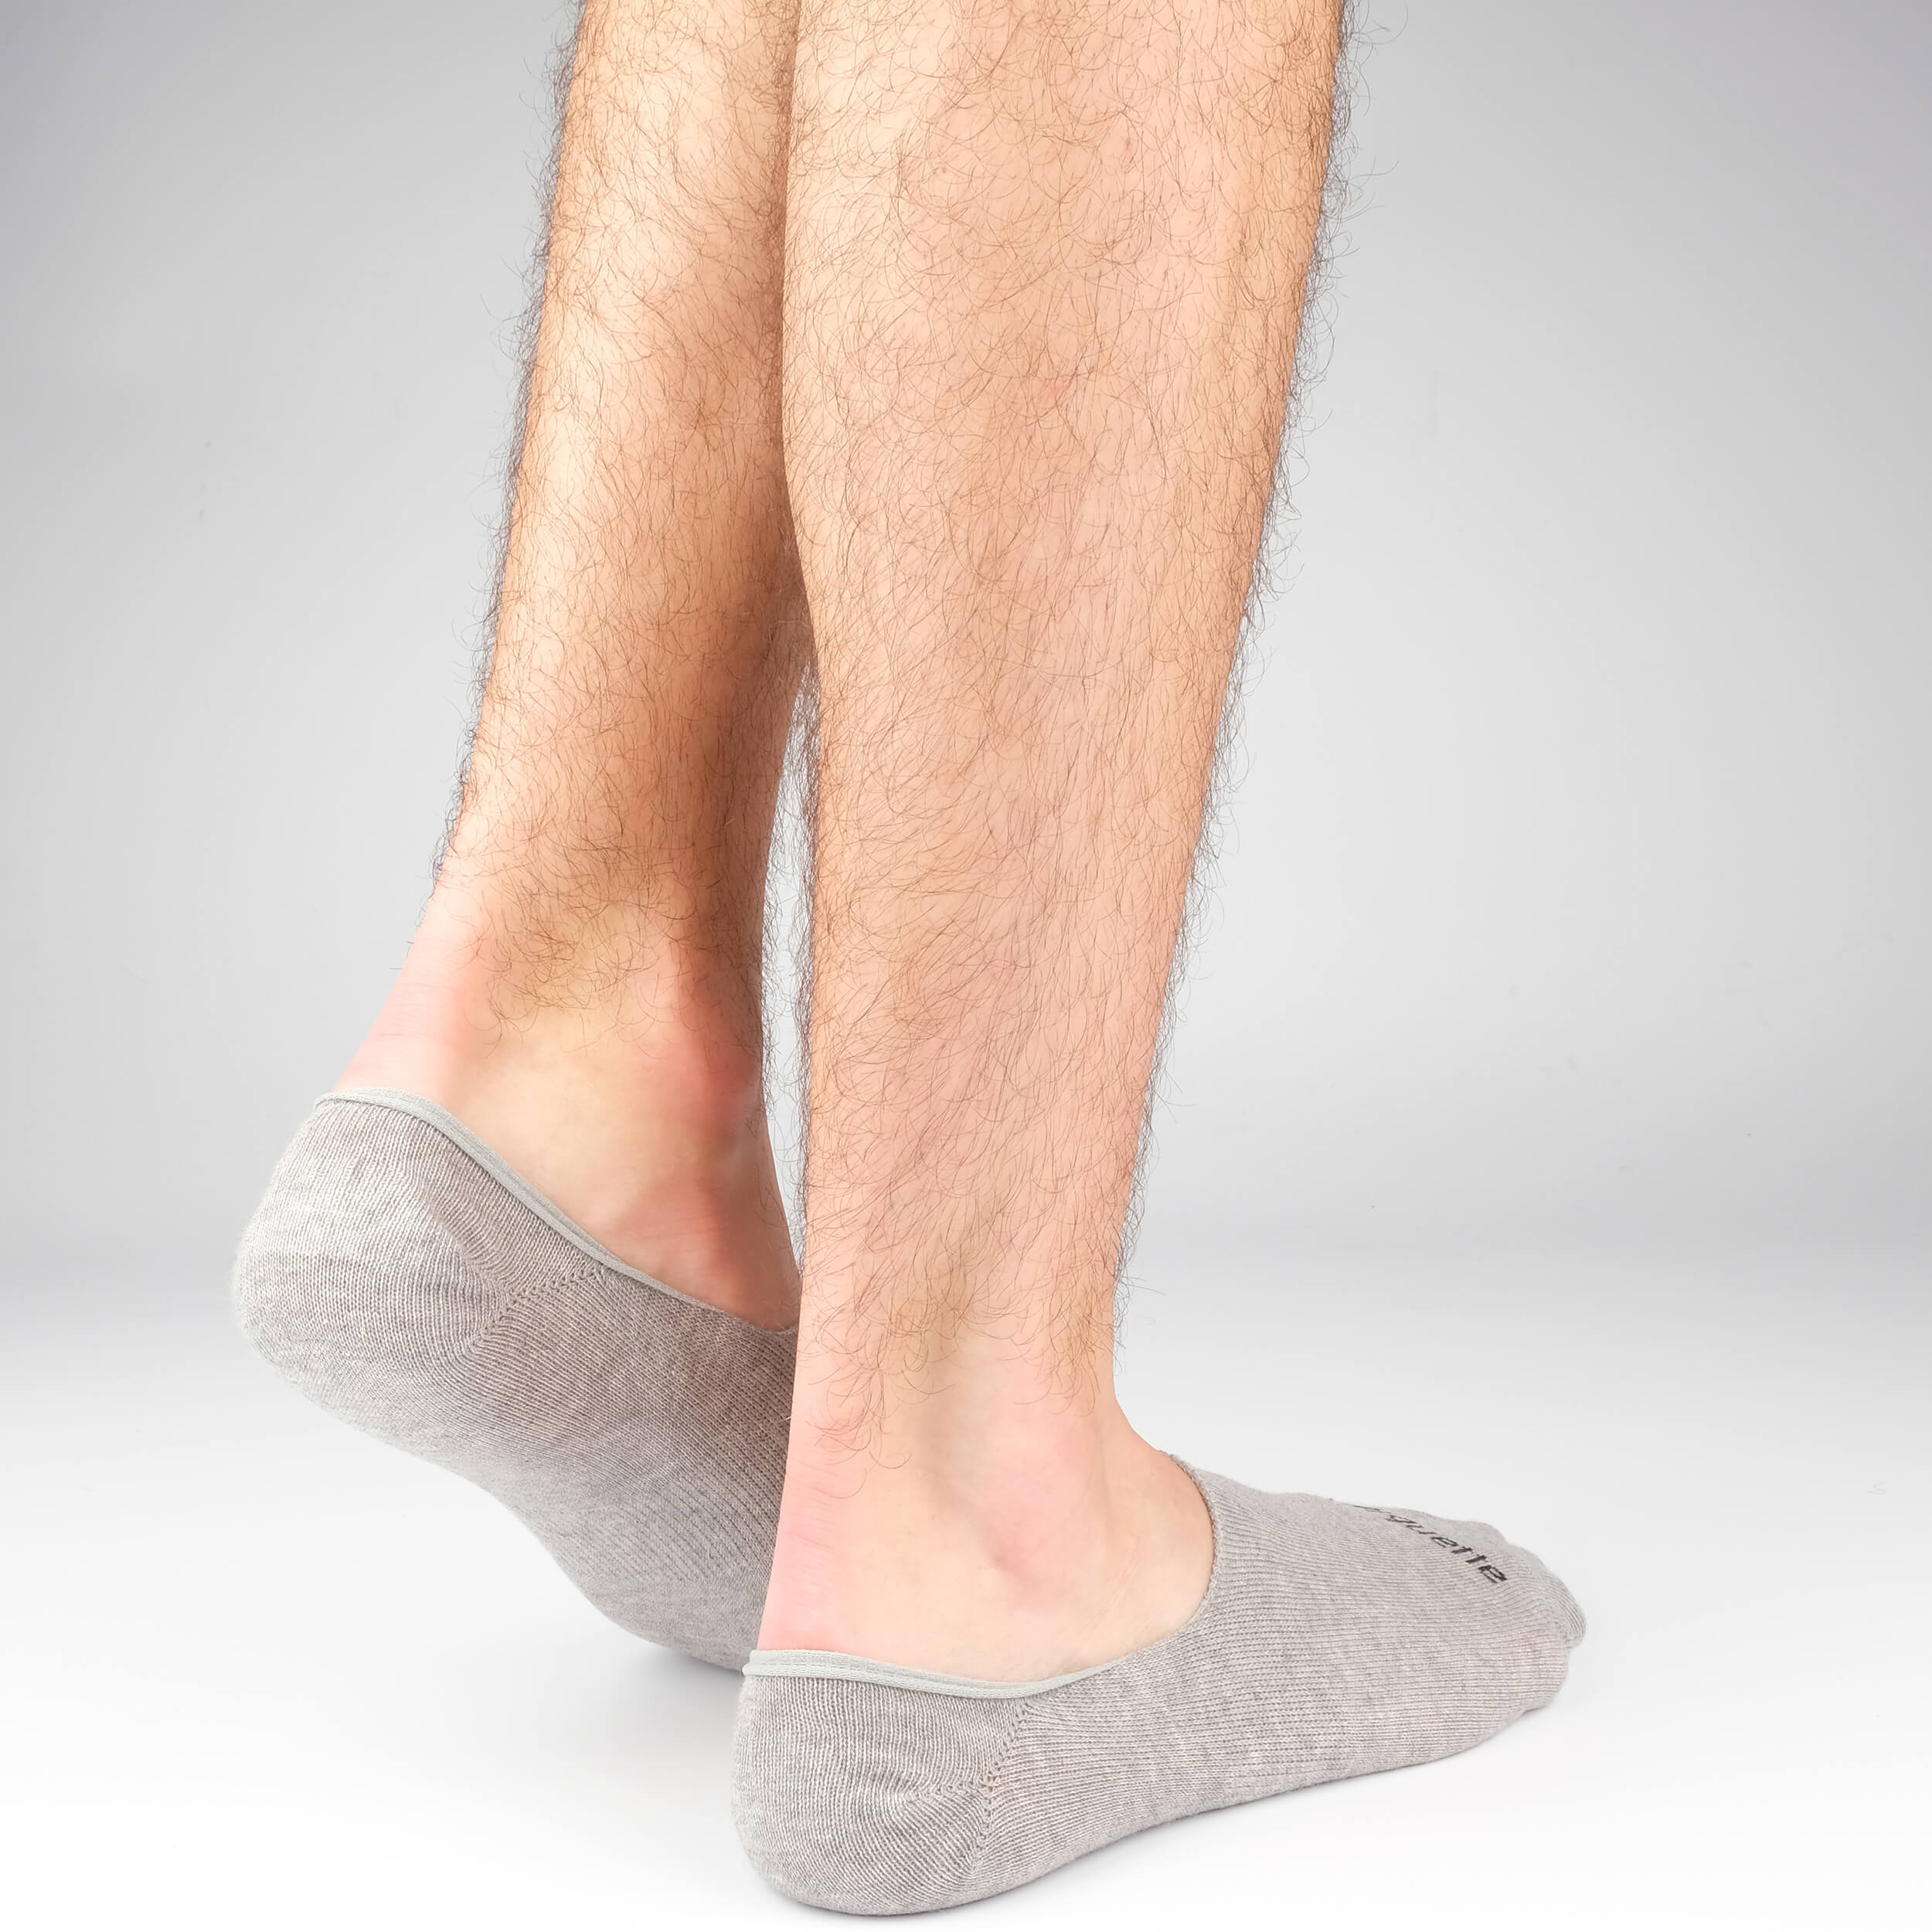 Men's No Show Socks - Grey